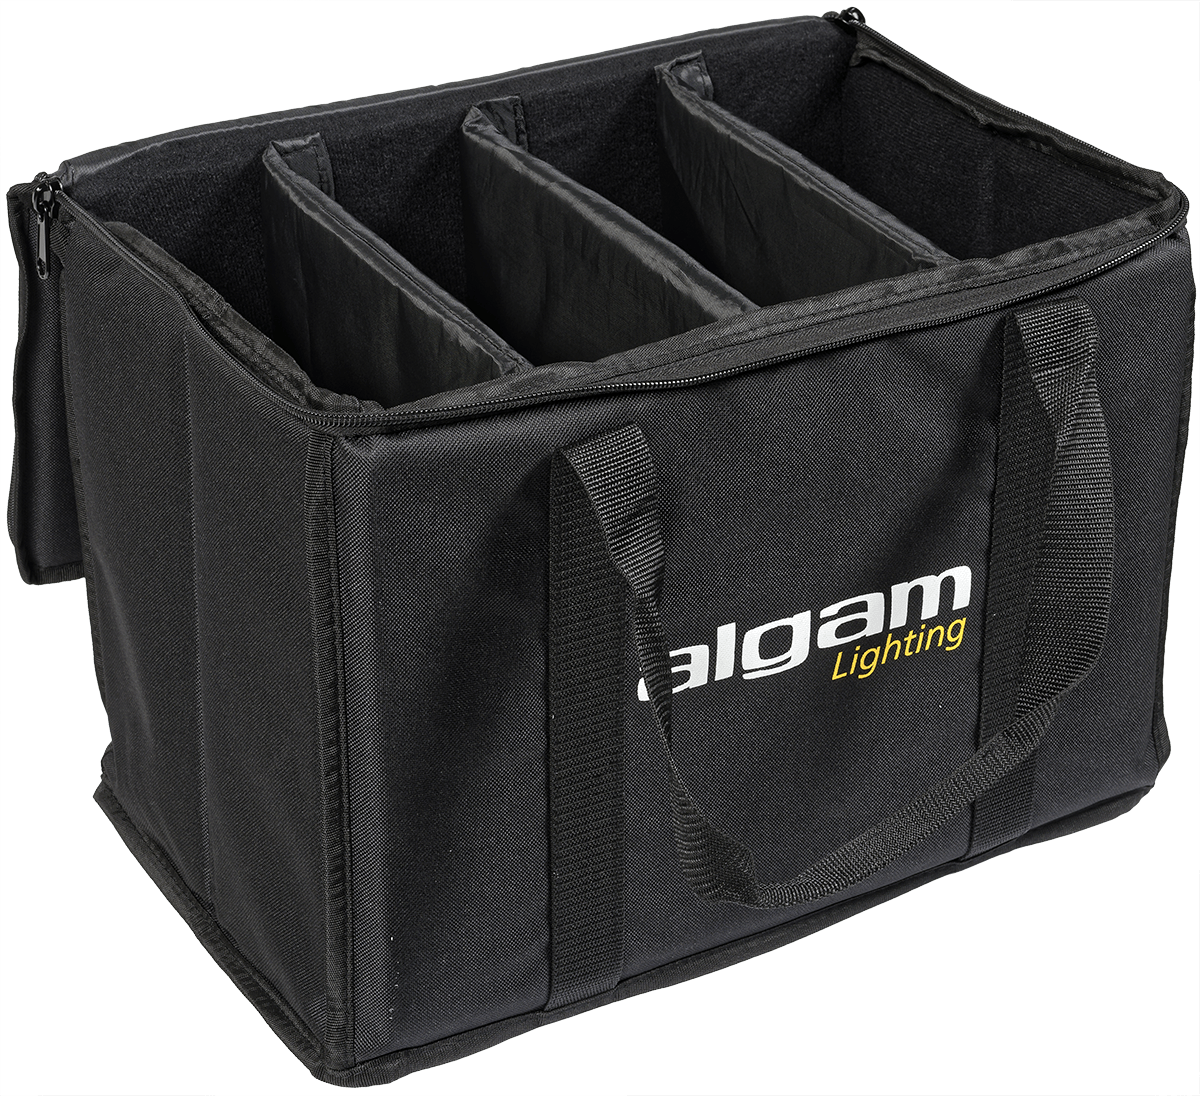 Algam Lighting - Bag - 40x26x30